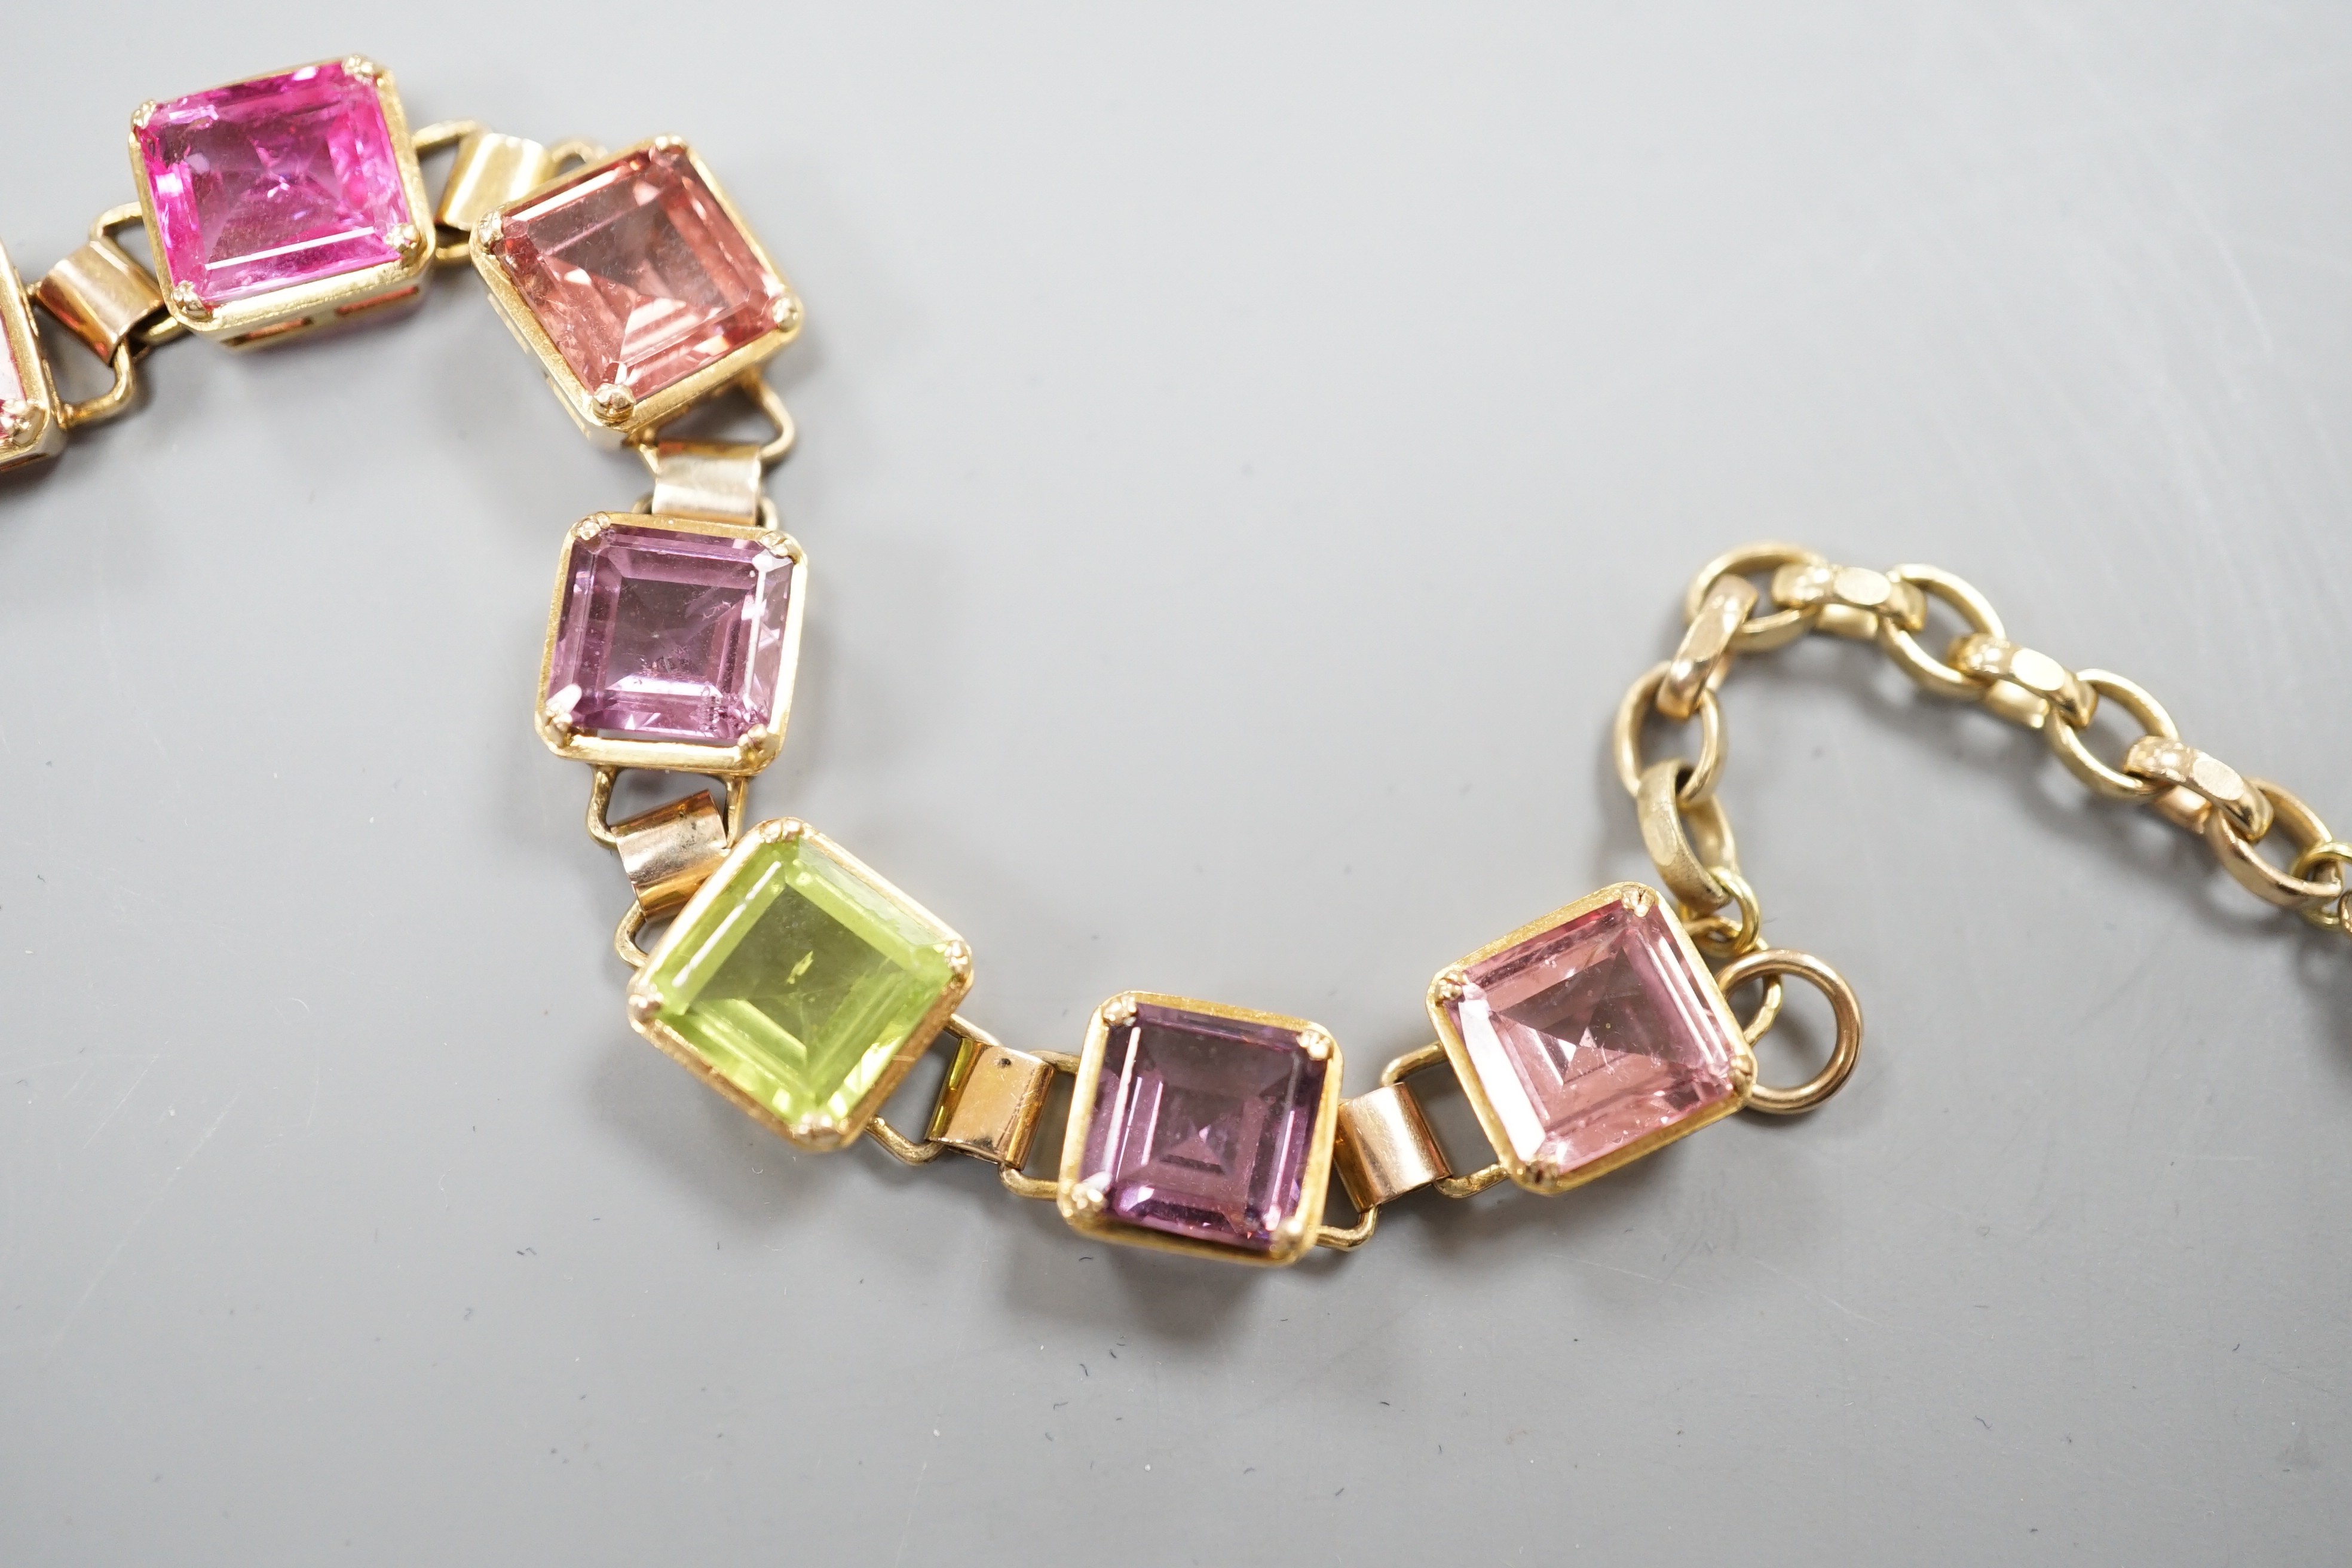 A modern 9k yellow metal and multi gem set bracelet, overall 24cm, gross weight 19.5 grams